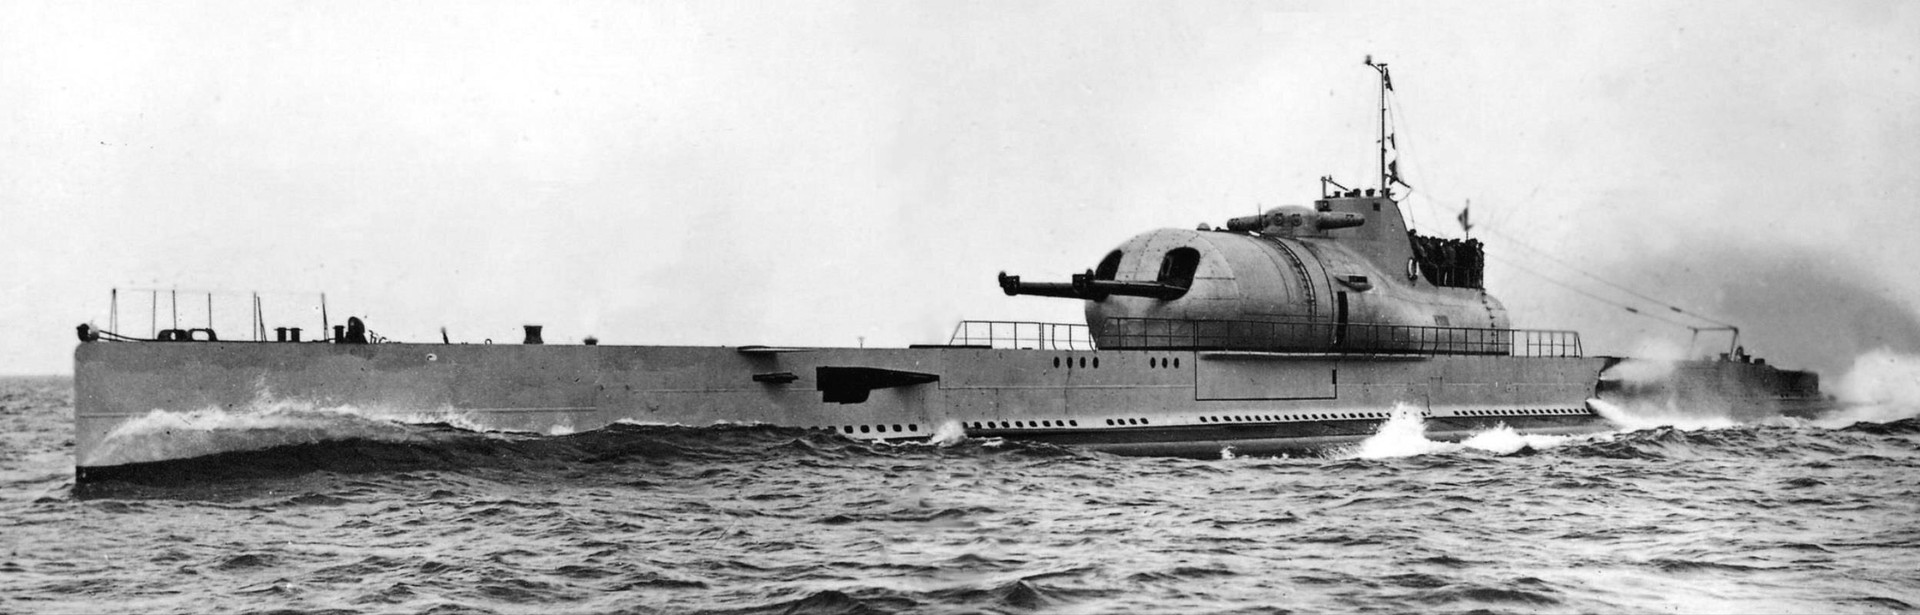 Tàu ngầm Surcouf.